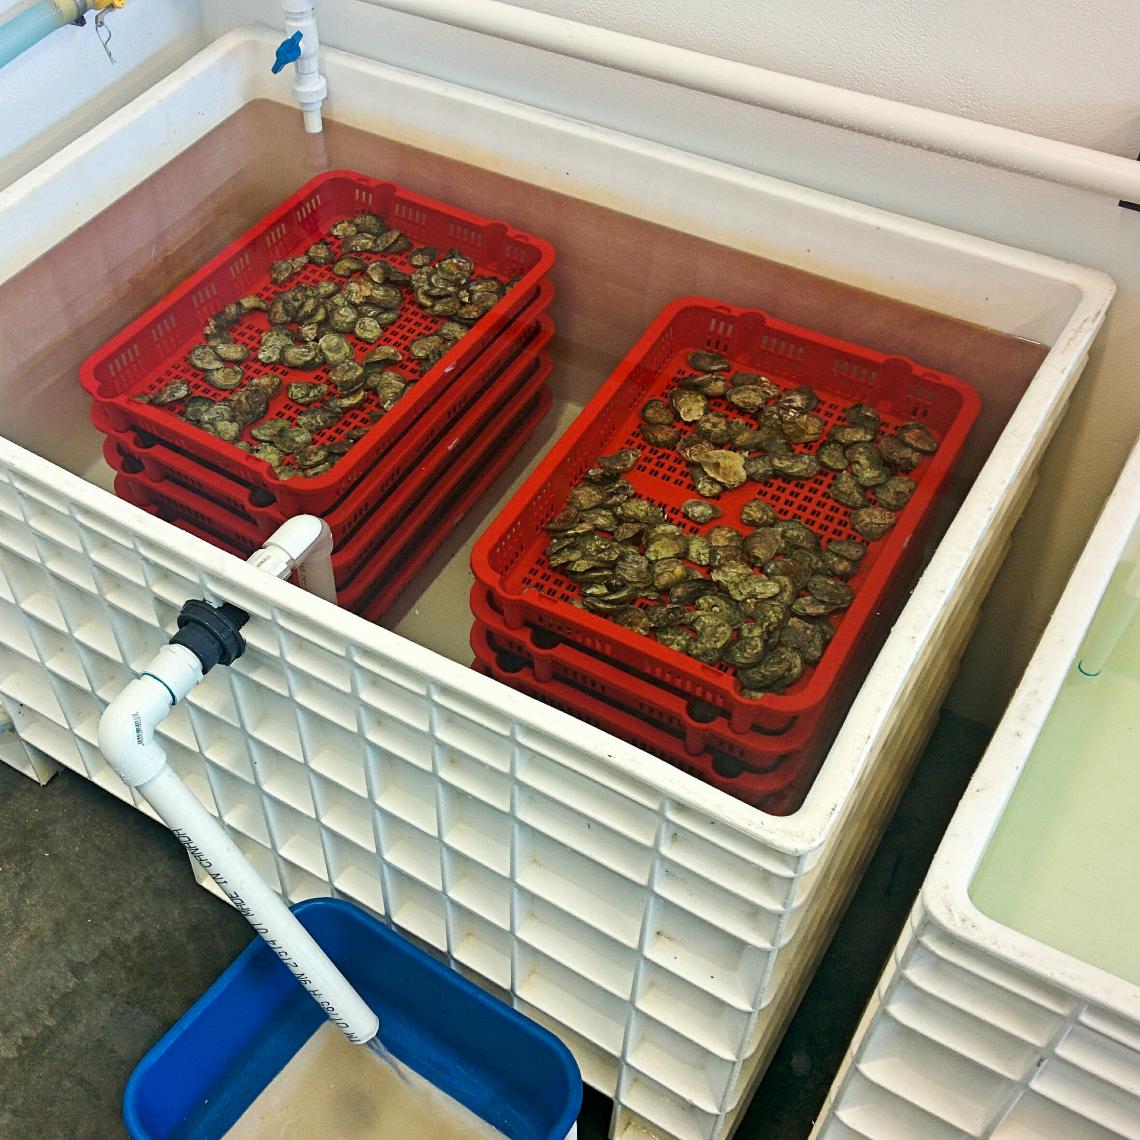 Oyster trays in a bin